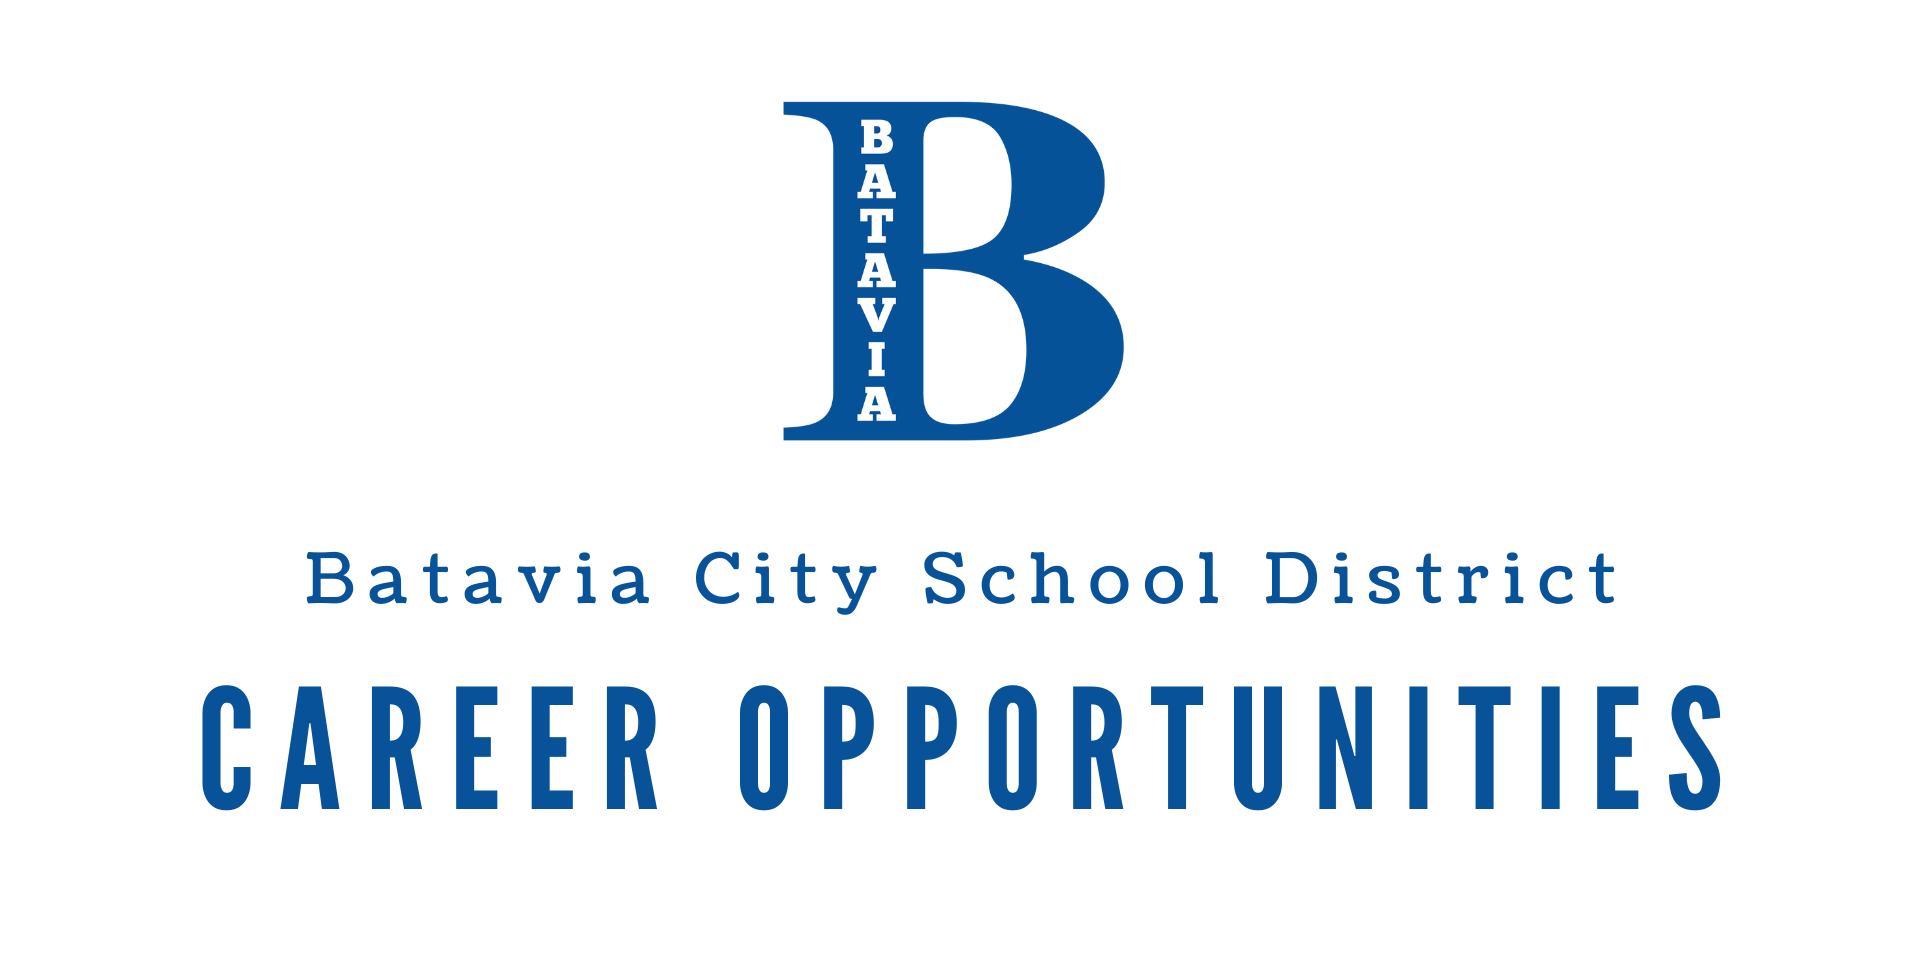 Batavia City School District Career Opportunities